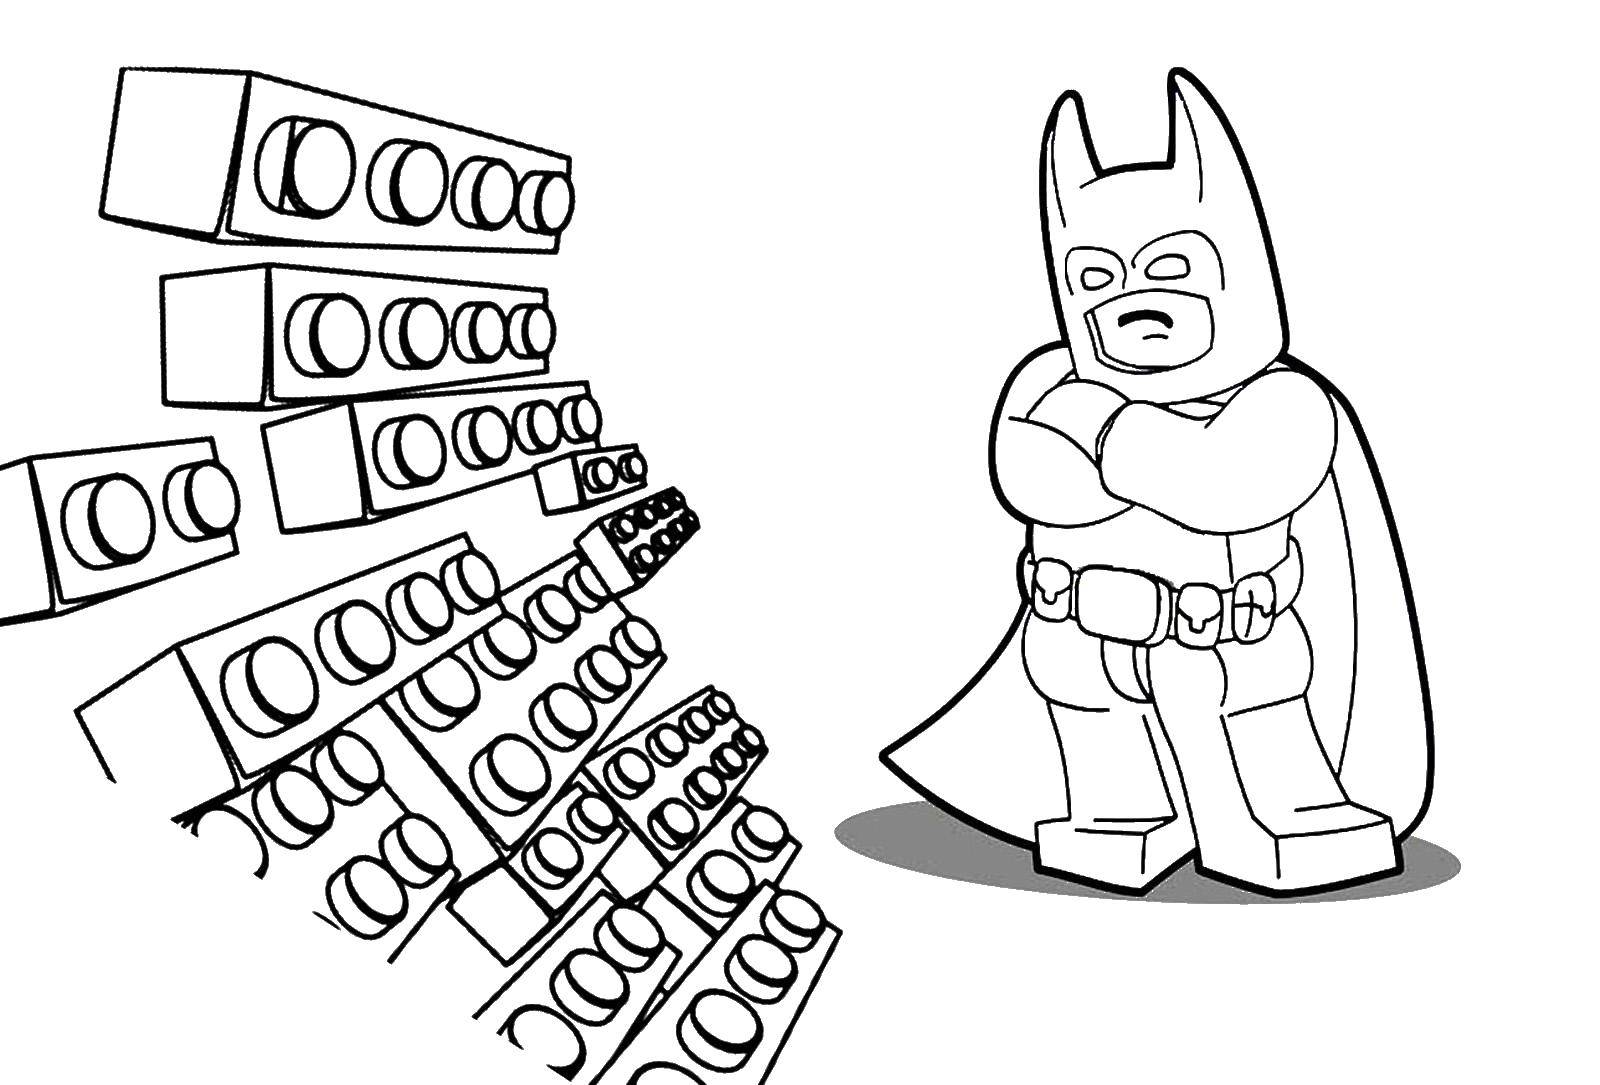 Раскраска Лего Бэтмен в плаще